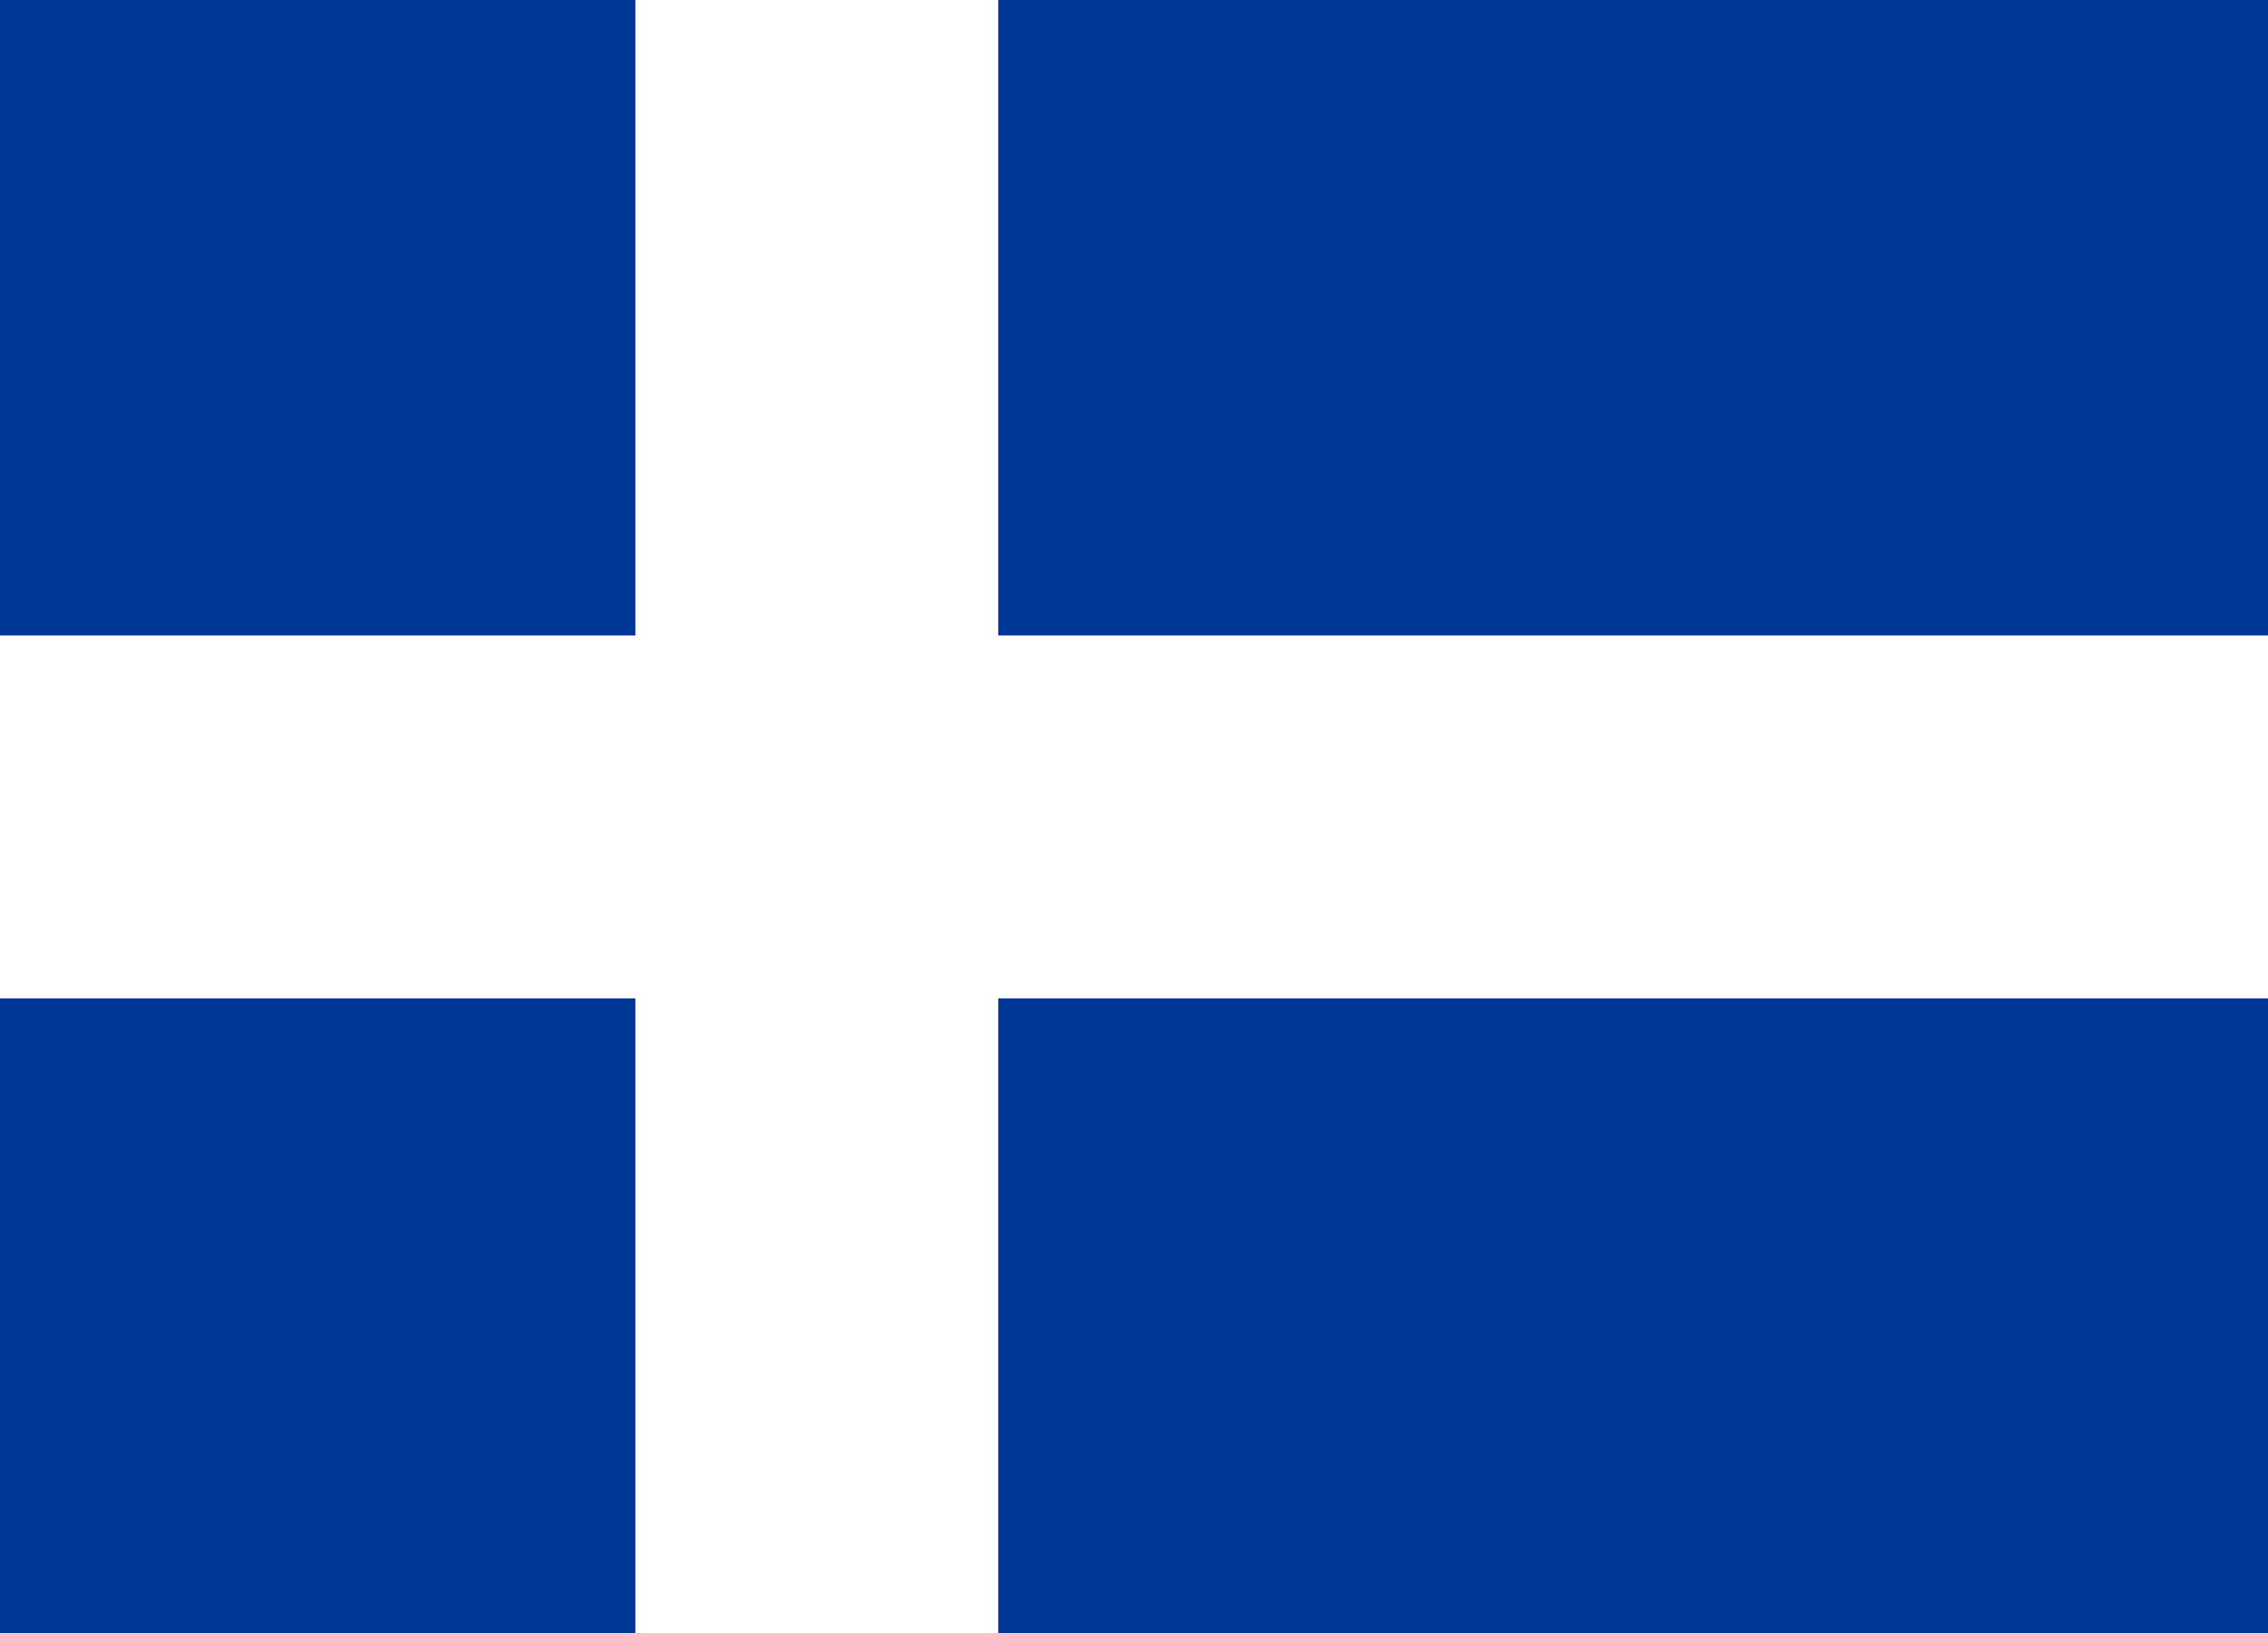 1897, the Hvítbláinn Iceland Flag